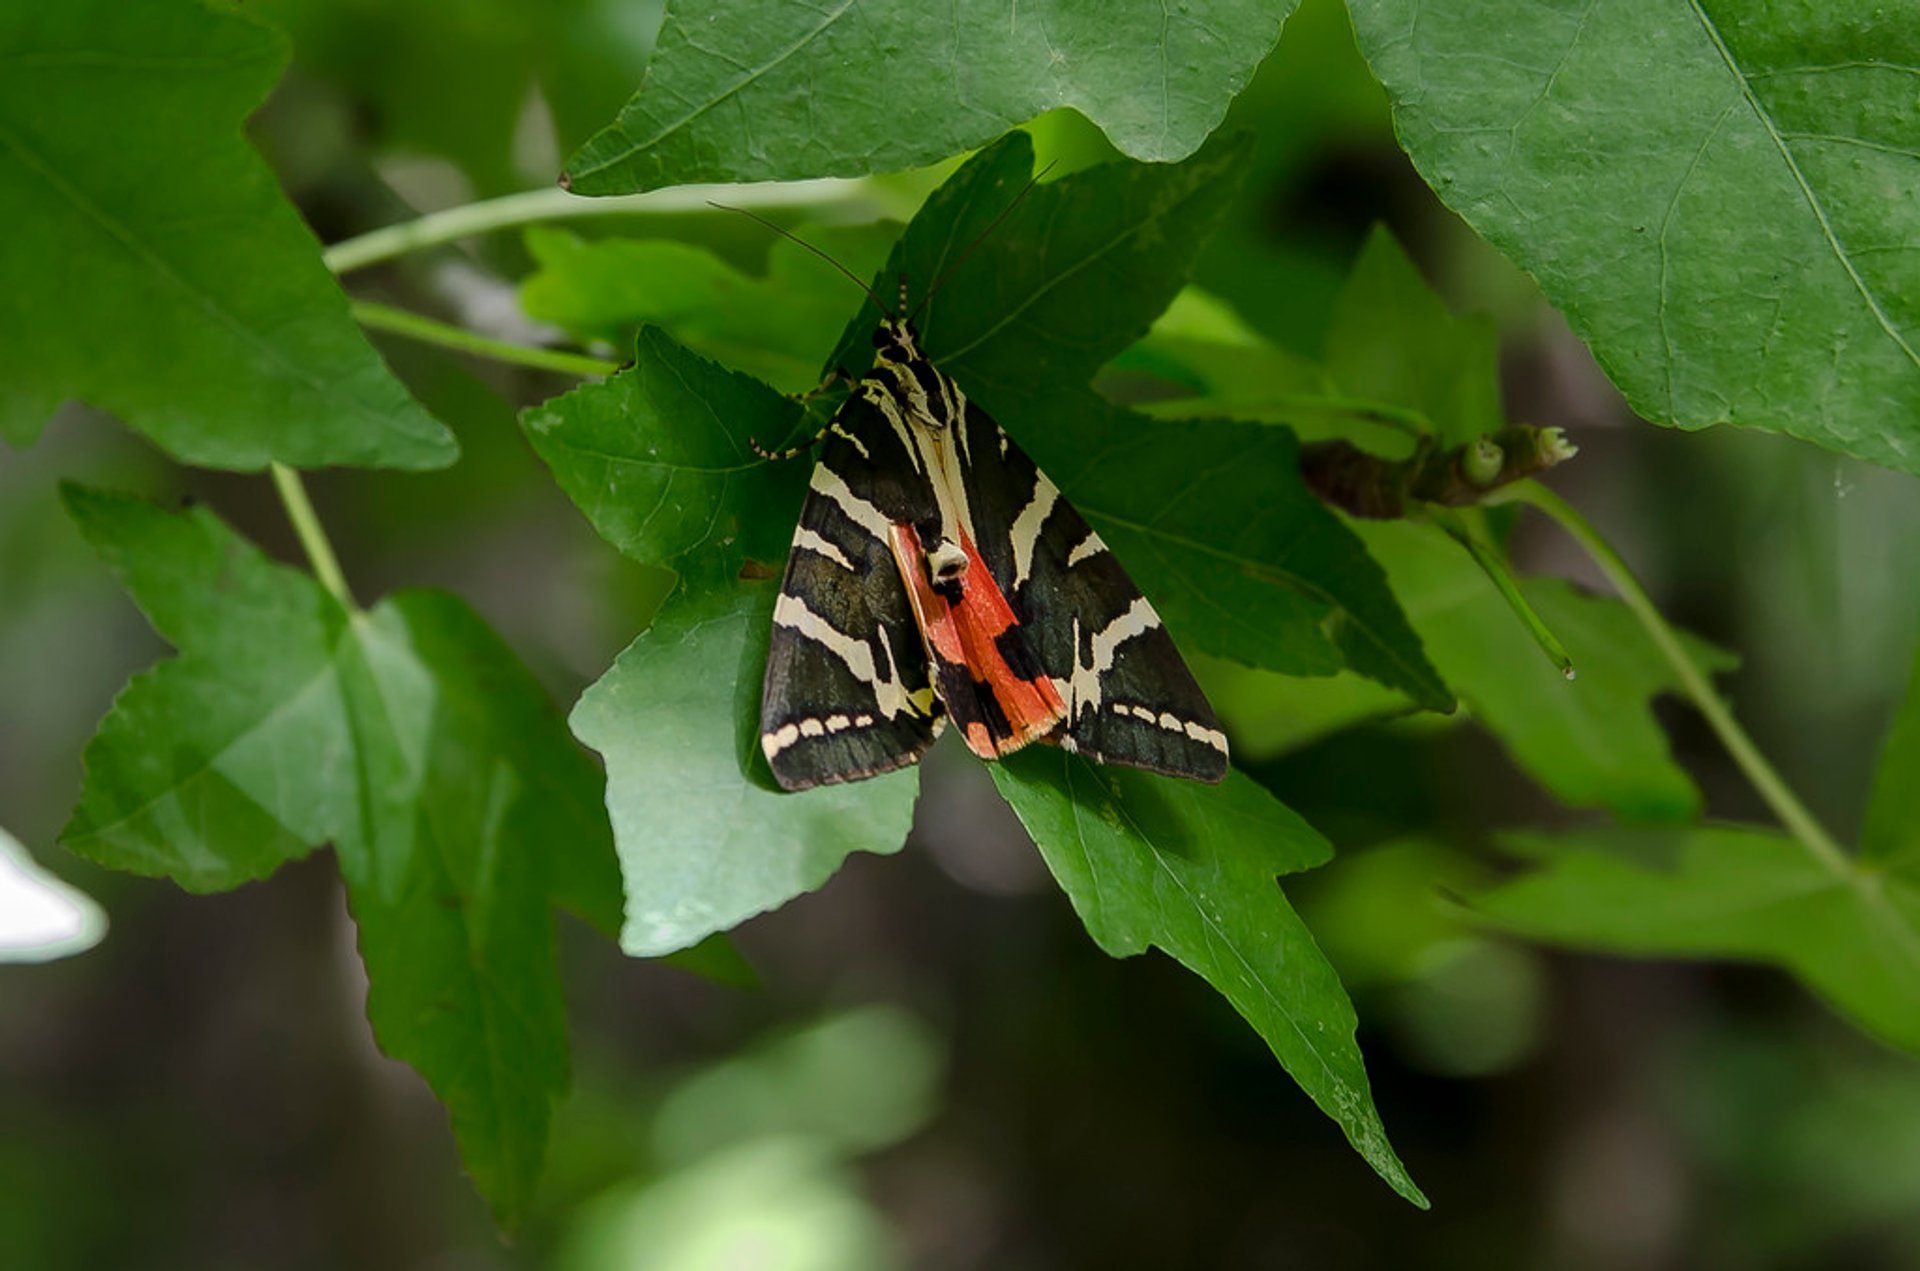 Das Tal der Schmetterlinge in Rhodos